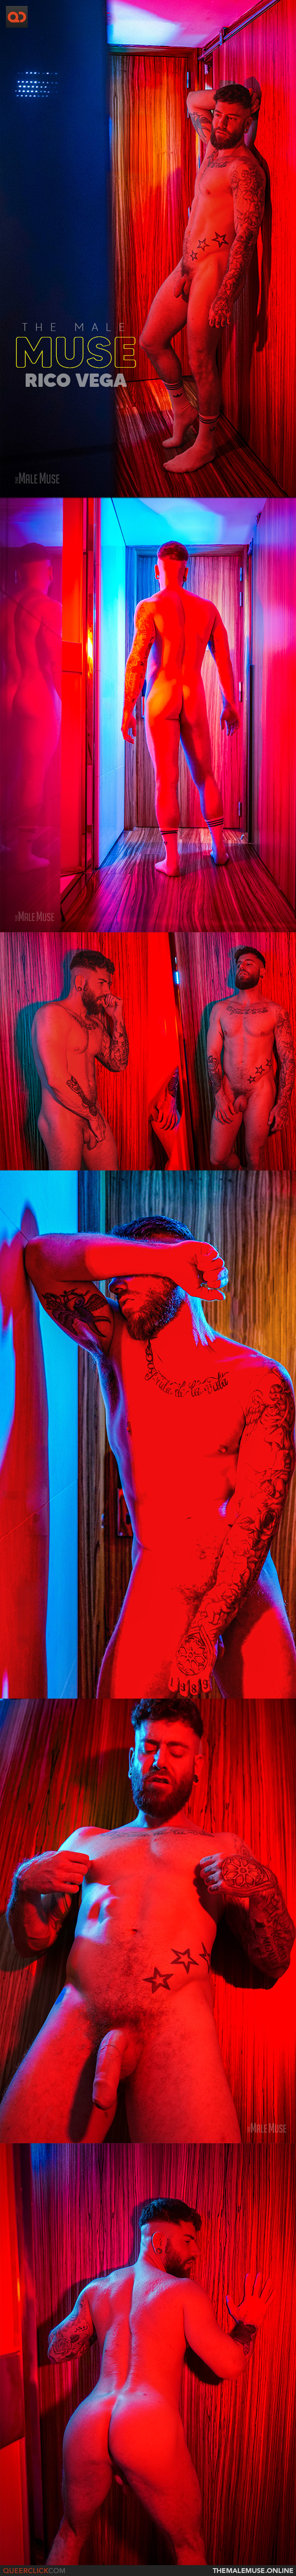 The Male Muse: Rico Vega - Illuminated